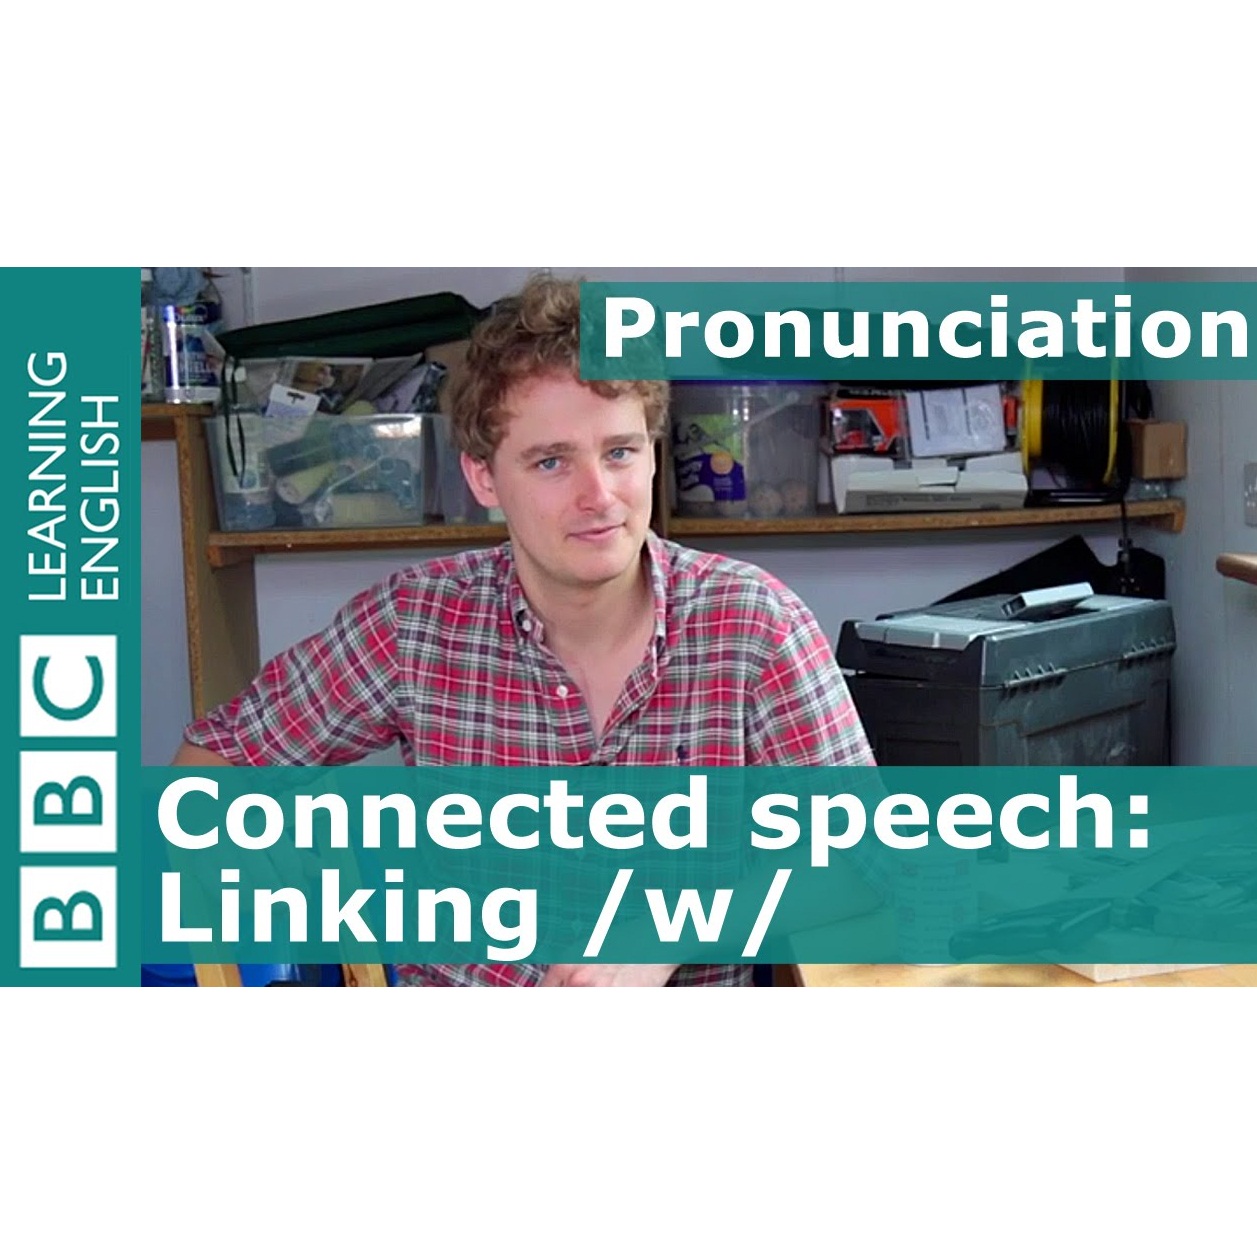 Pronunciation: Linking /w/ (Nguyên tắc thêm nối âm /w/)